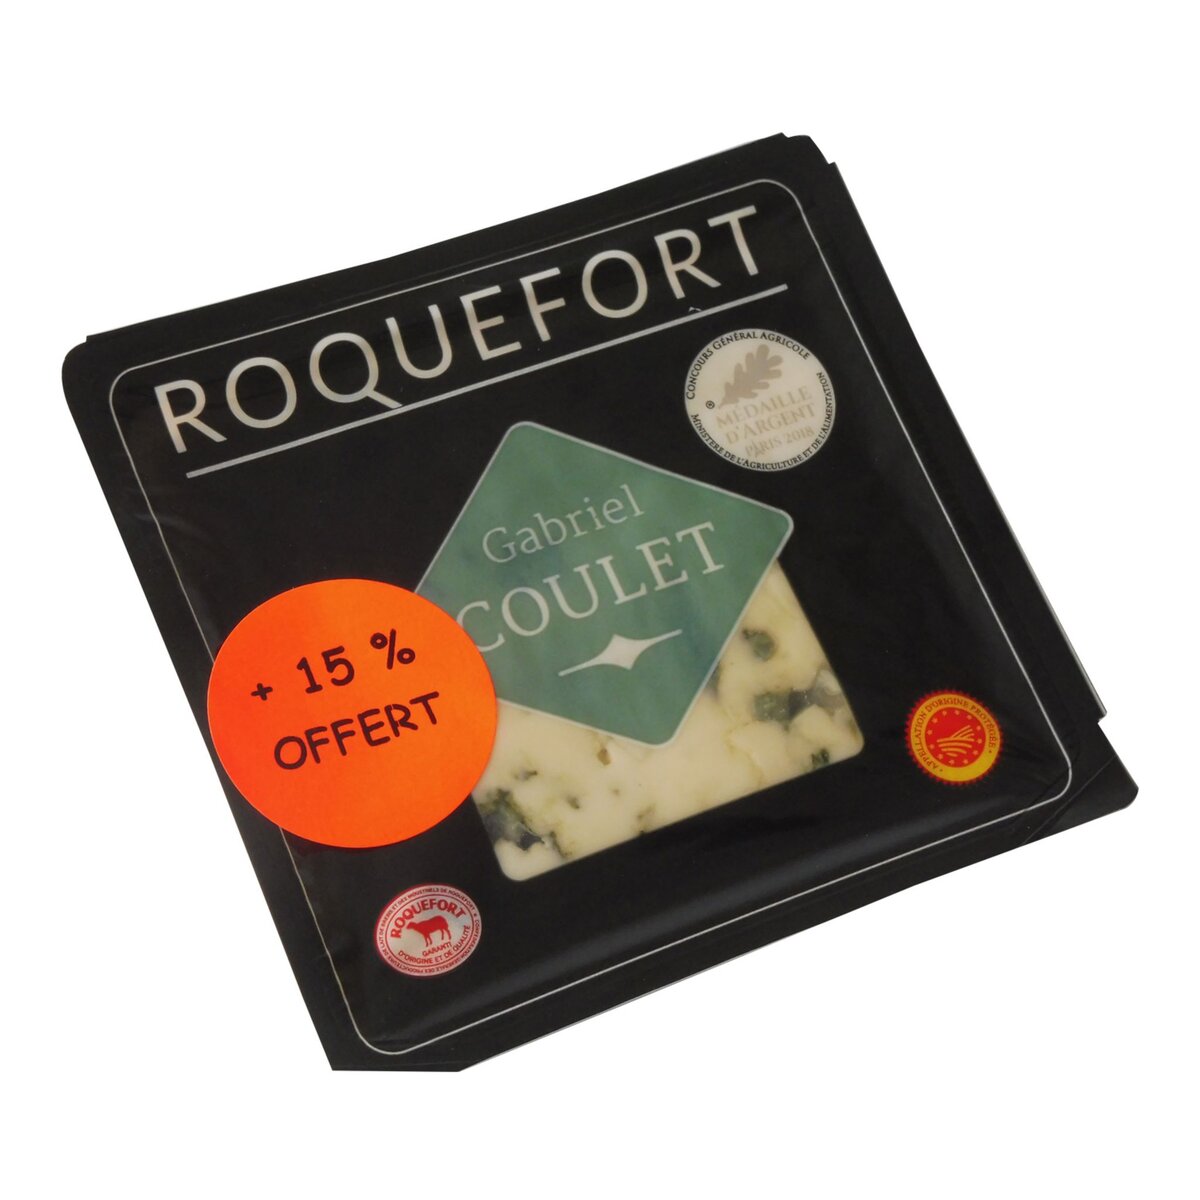 GABRIEL COULET Roquefort AOP 150g +15% offert